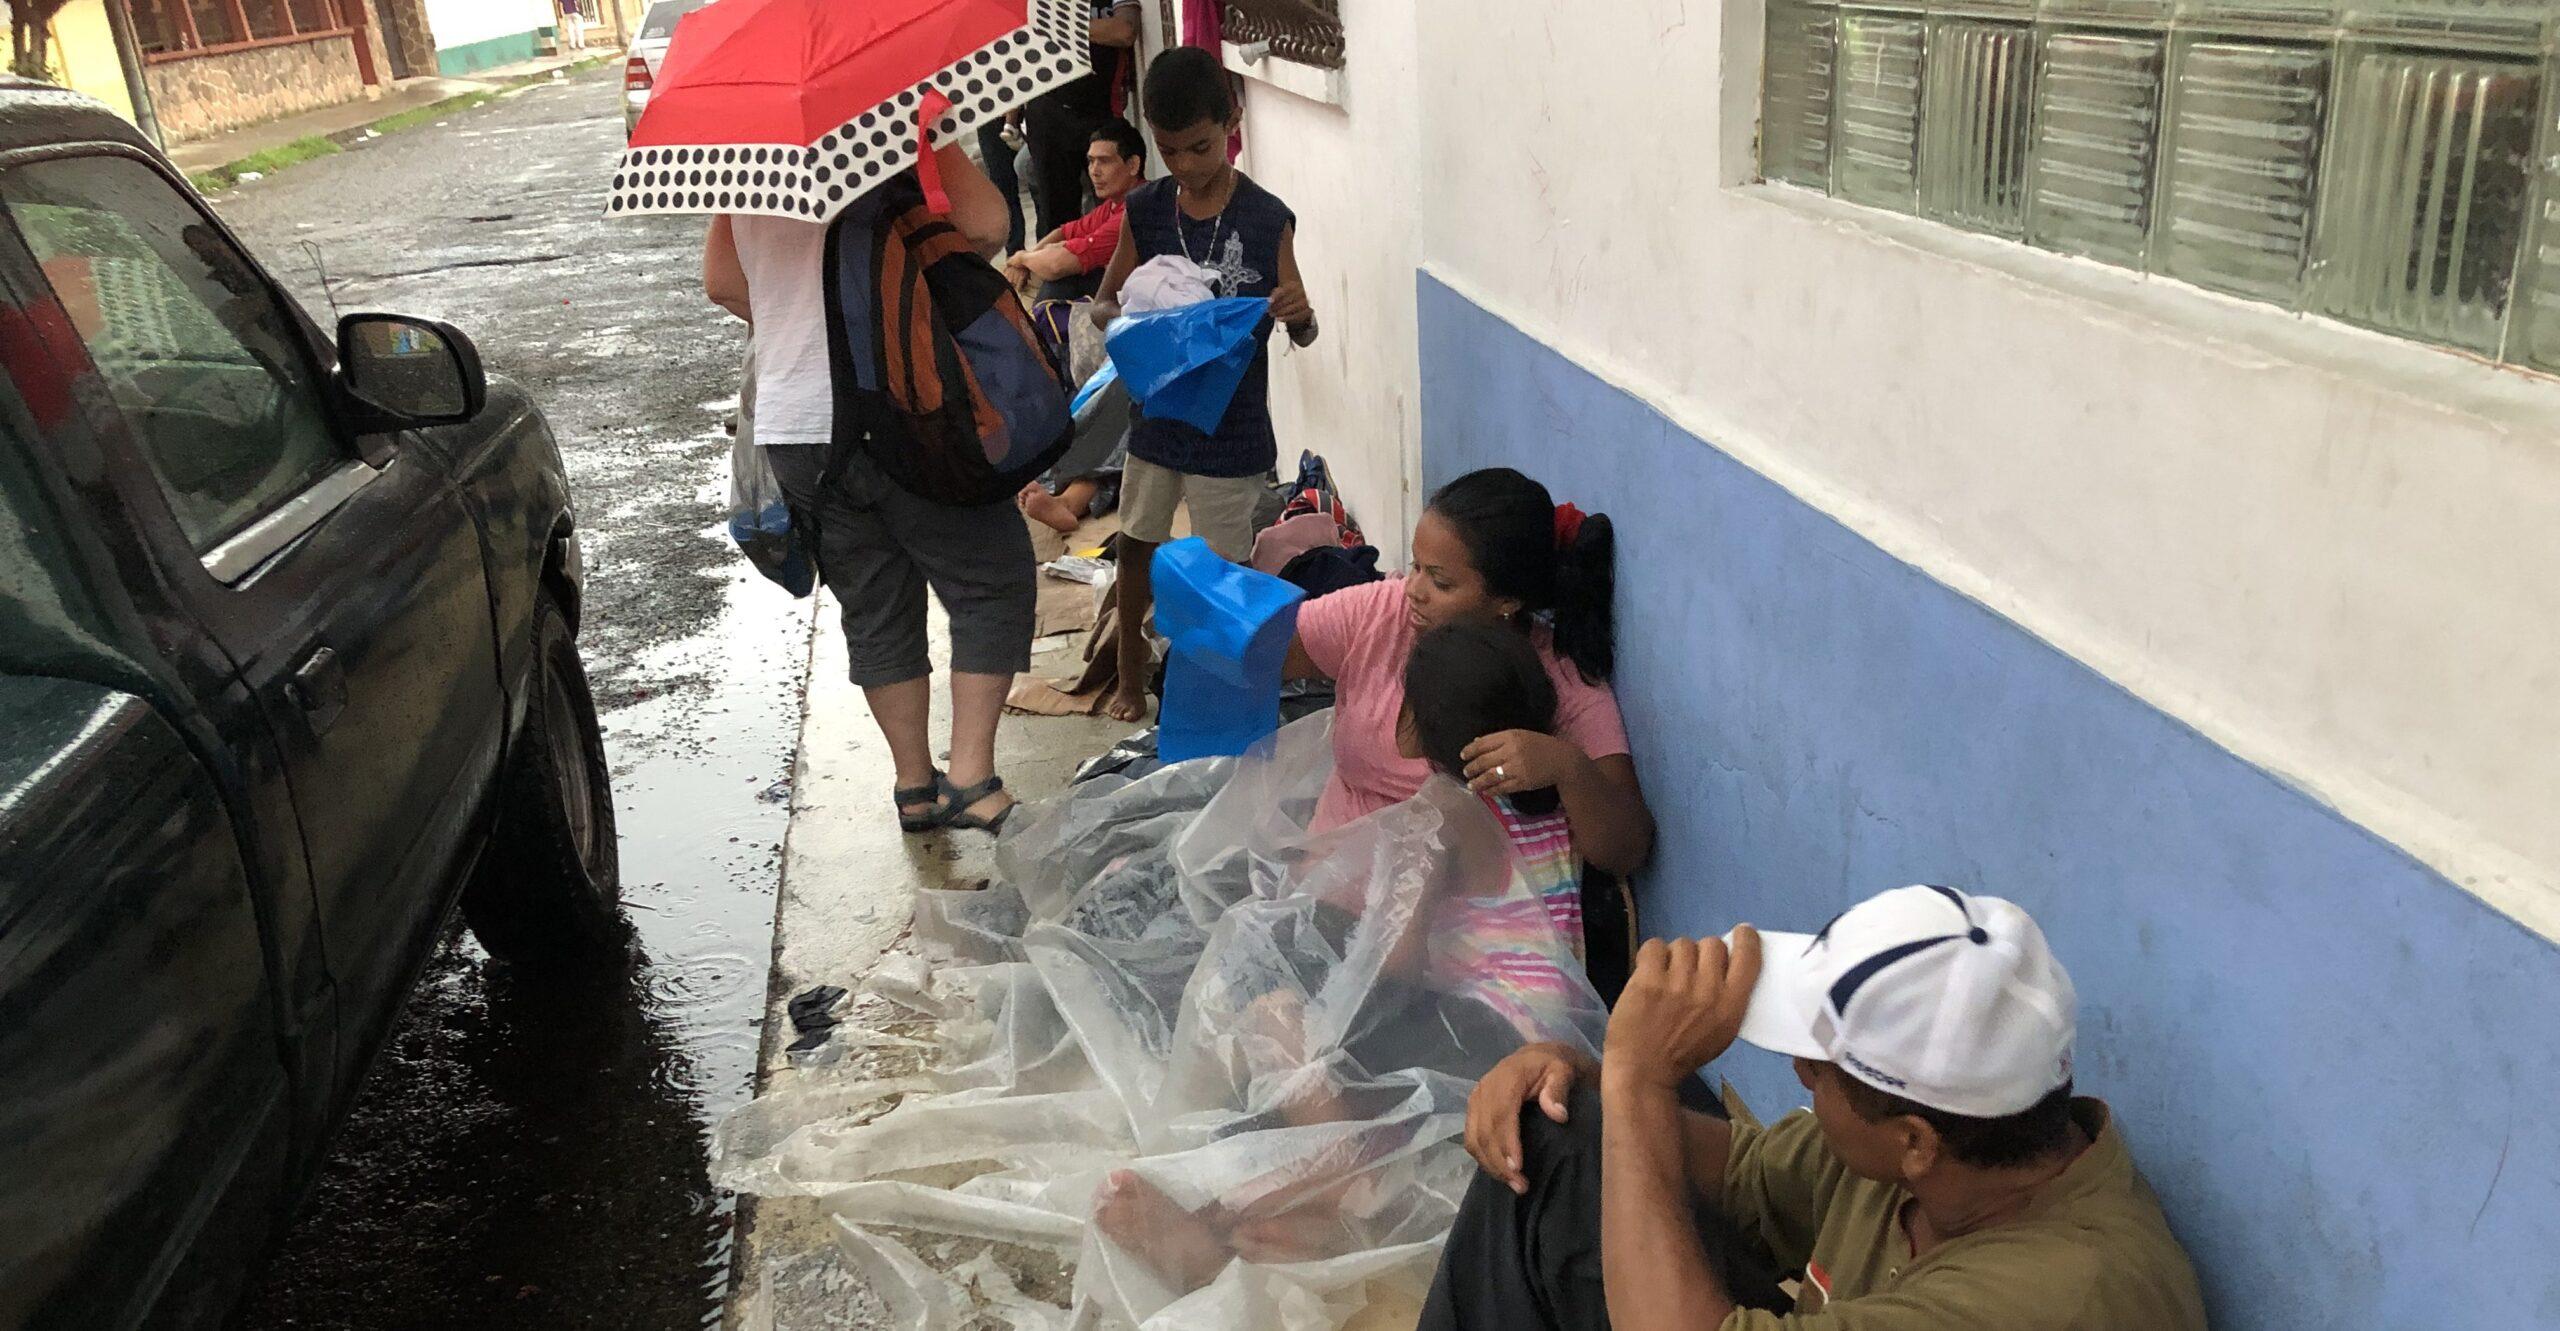 Bajo la lluvia, migrantes duermen en la calle en espera de asilo en México; solicitudes de refugio pueden llegar a 80 mil